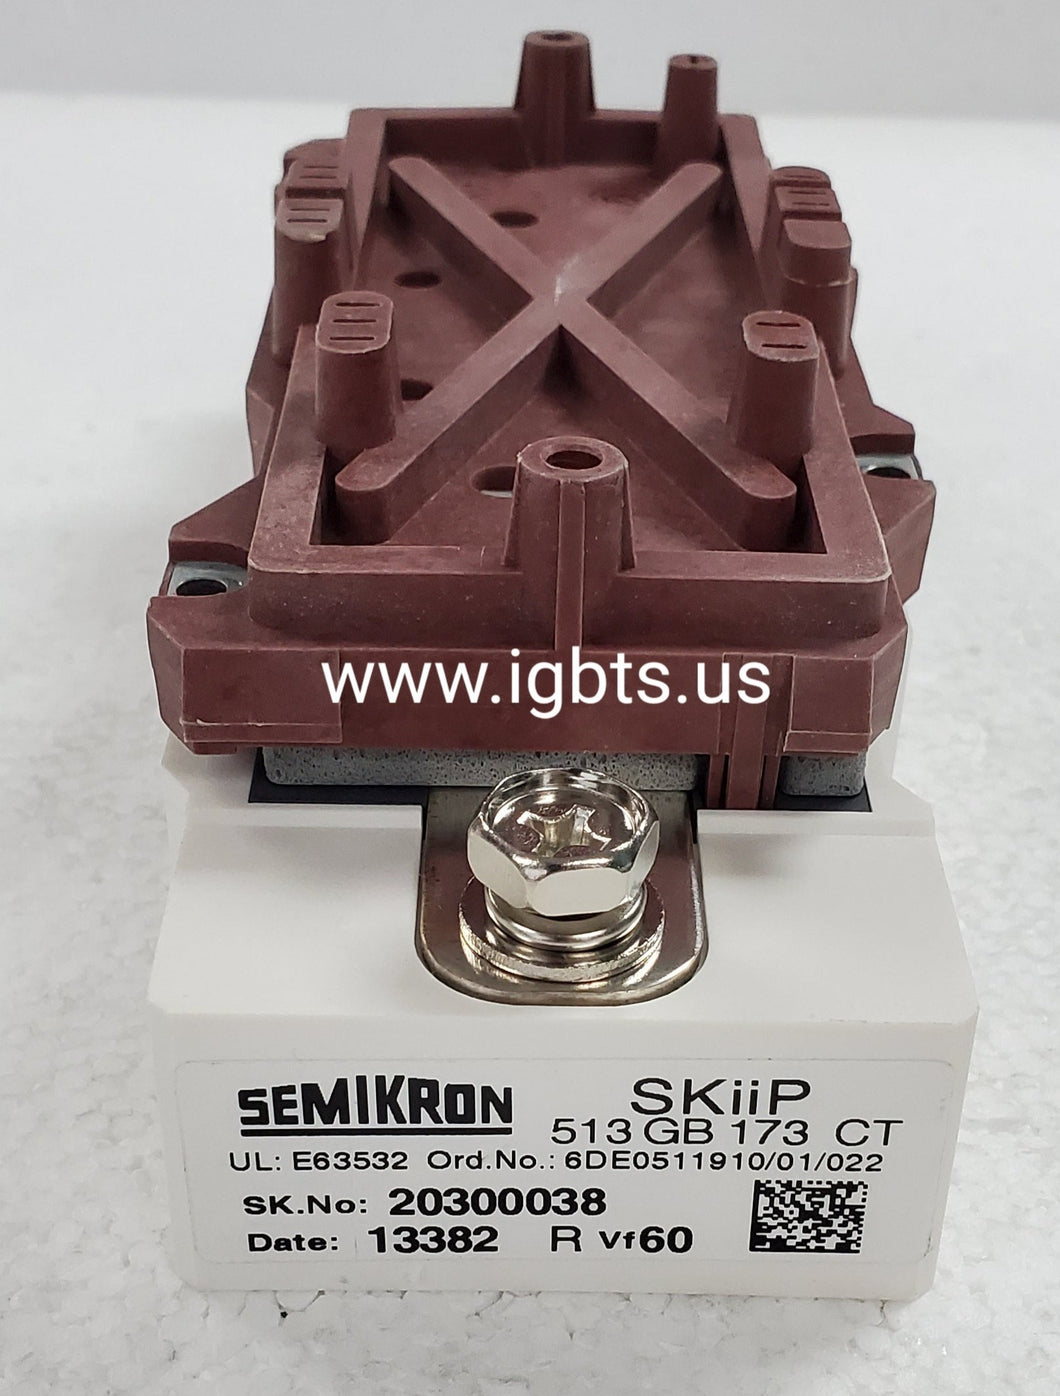 SKIIP513GB173CT - SEMIKRON - ATI Accurate Technology